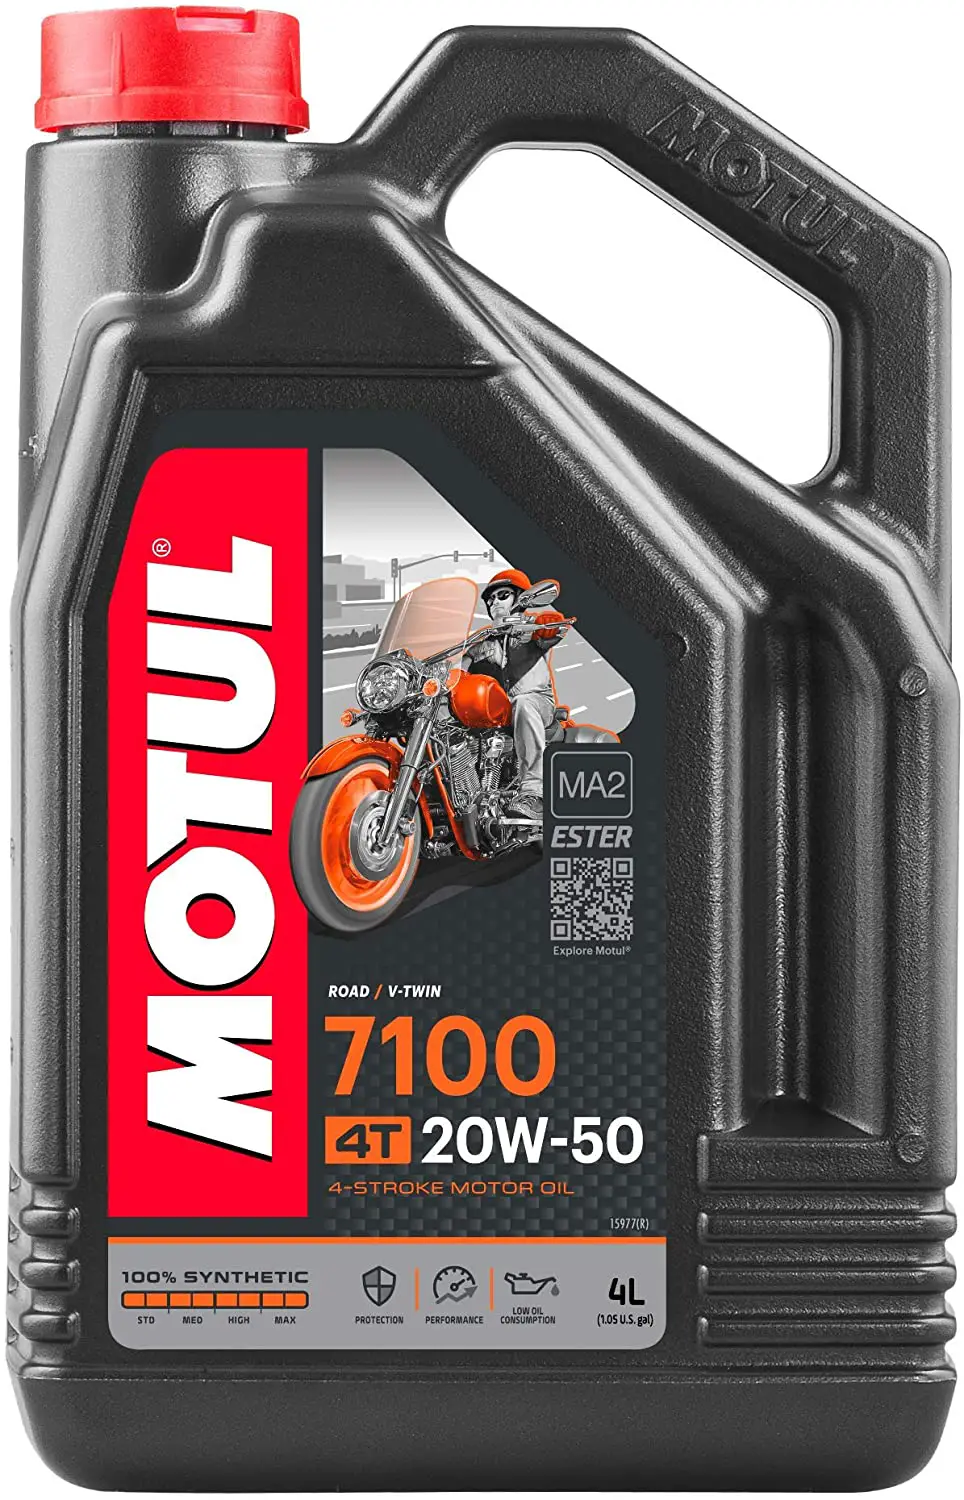 Motul-7100-Synthetic-20W50-Motor-Oil